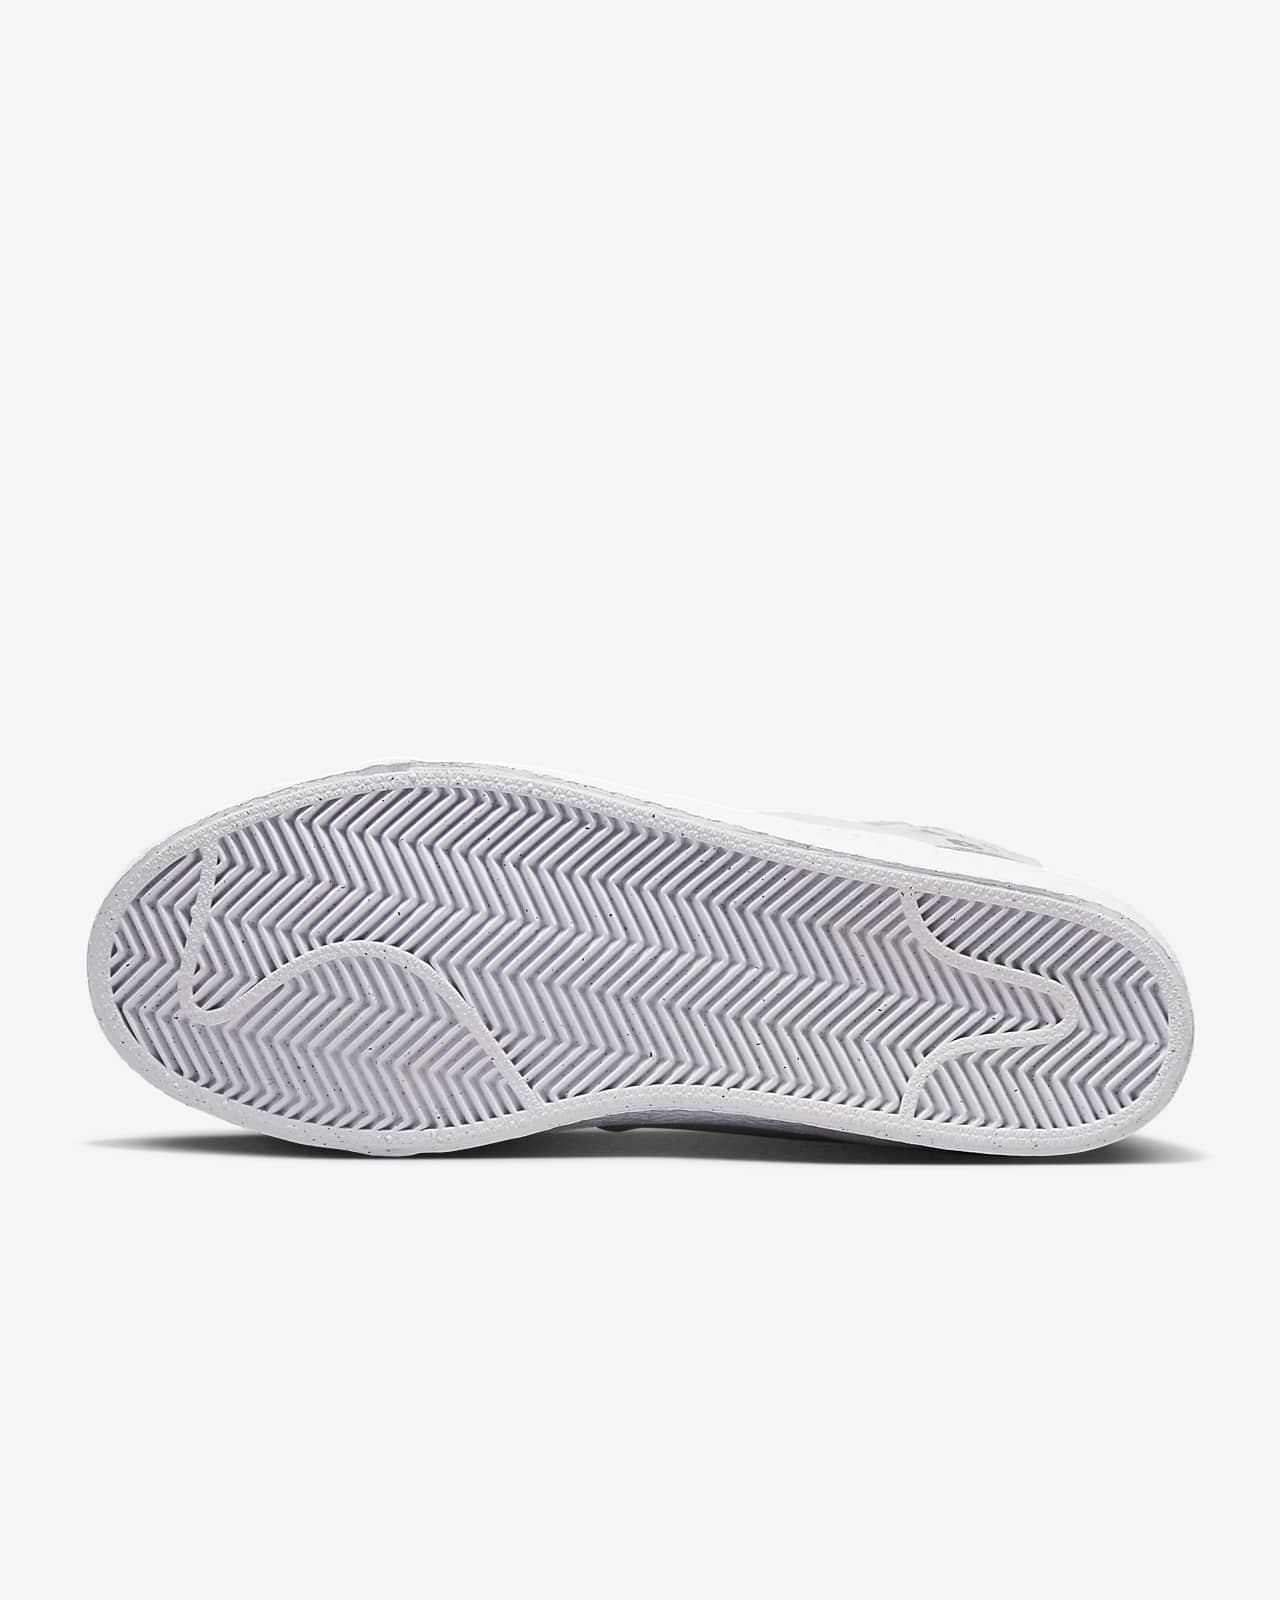 Nike SB Zoom Blazer Mid Premium Skate Shoes. Nike LU